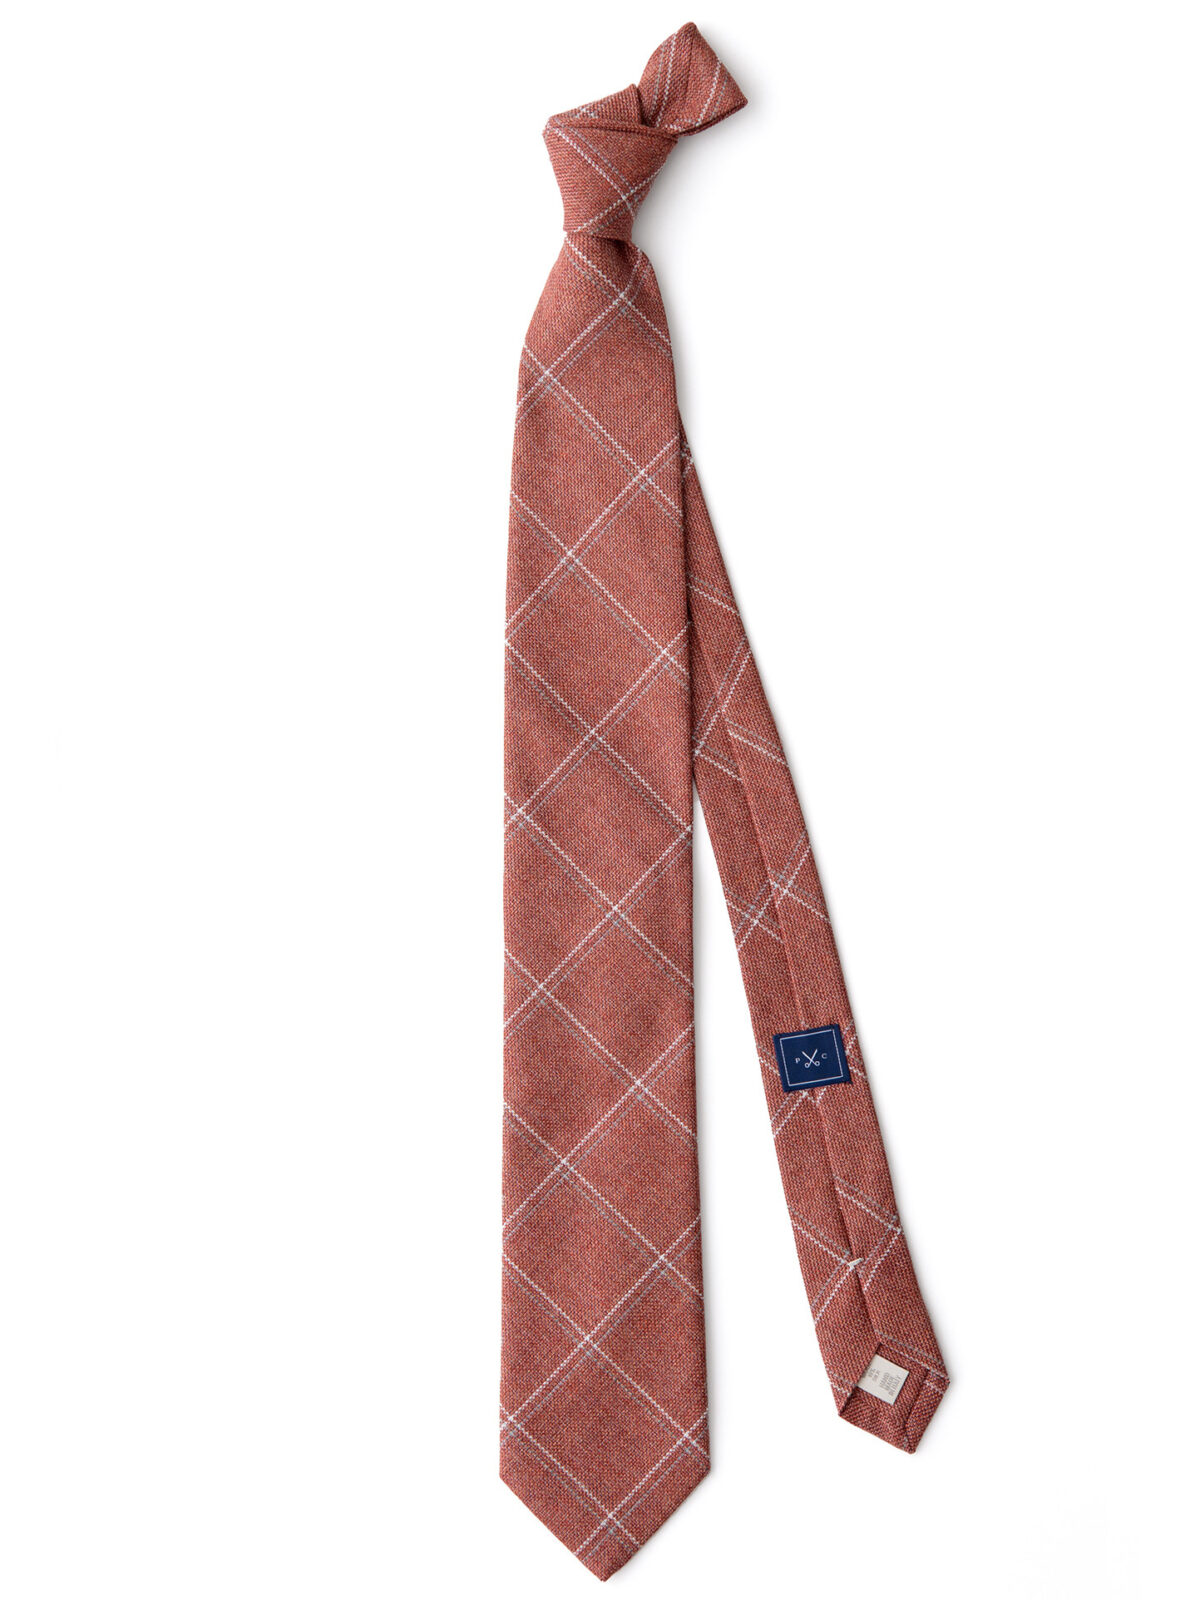 Sienna Cotton Wool and Silk Windowpane Tie